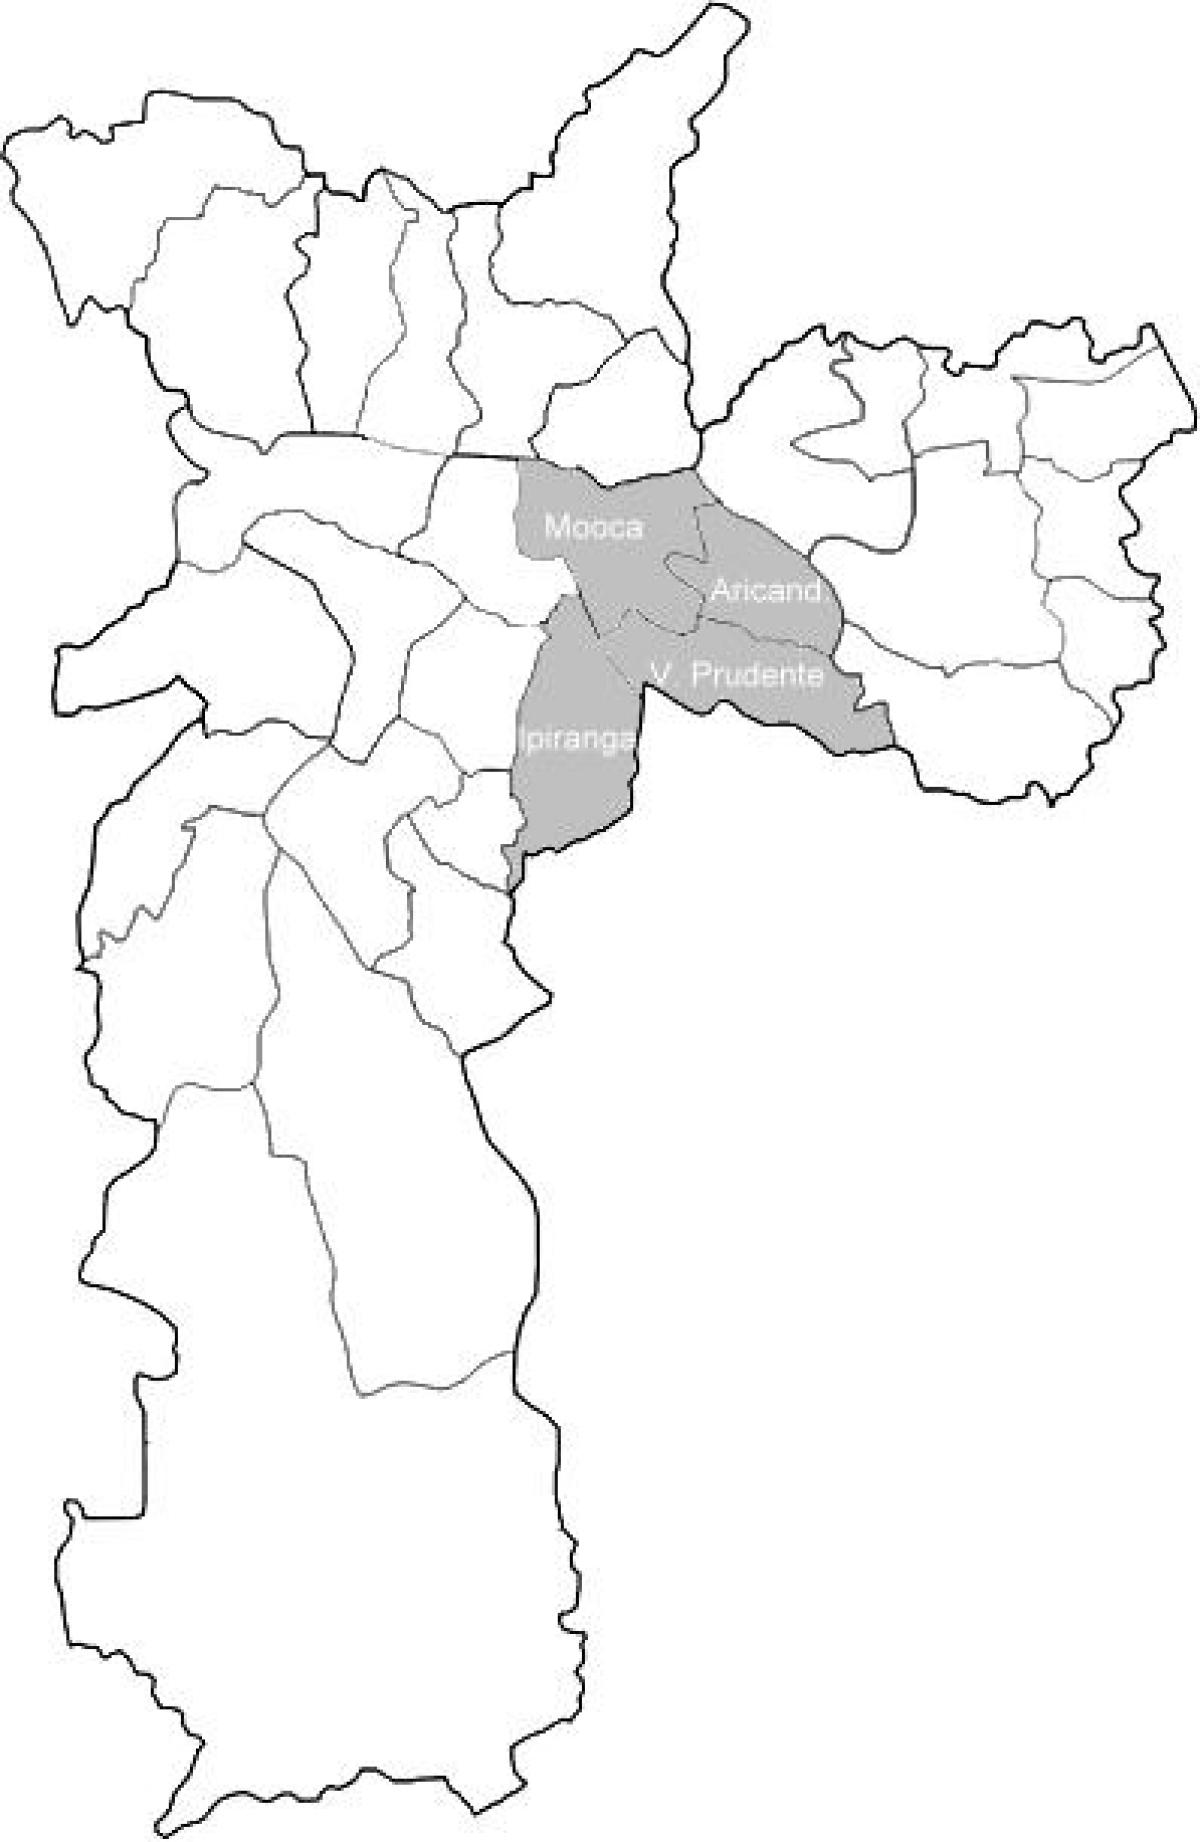 मानचित्र के क्षेत्र Sudeste साओ पाउलो